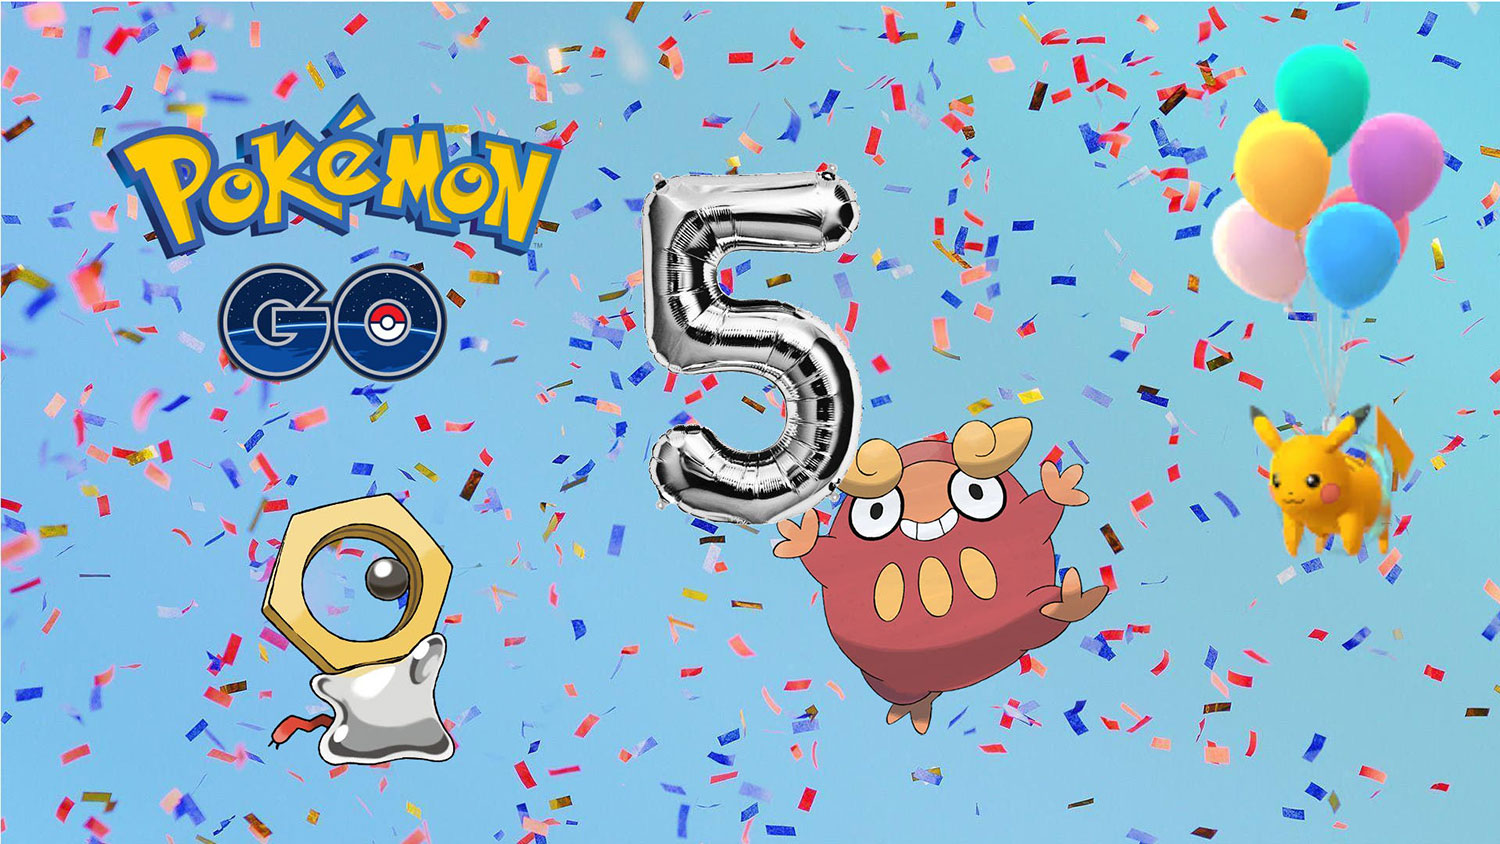 درآمد بازی Pokémon Go پس از ۵ سال به ۵ میلیارد دلار رسید